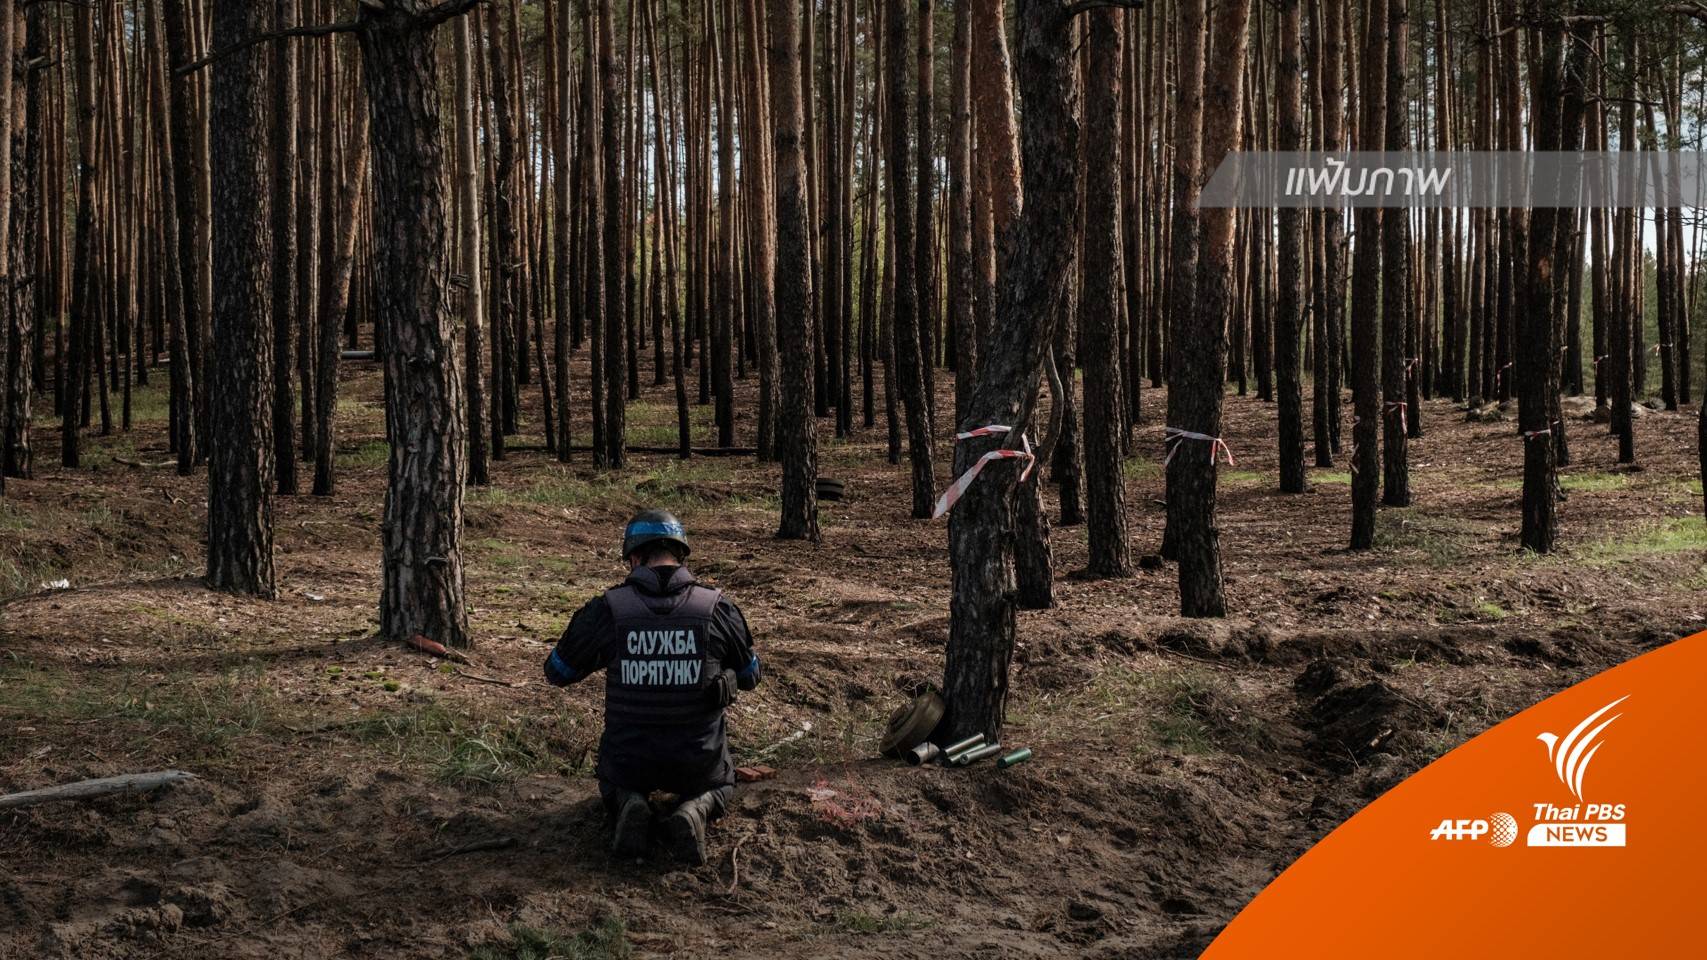 ยูเครนพบหลุมศพหมู่ขนาดใหญ่ในเมืองลีมาน หลังยึดคืนพื้นที่จากรัสเซีย